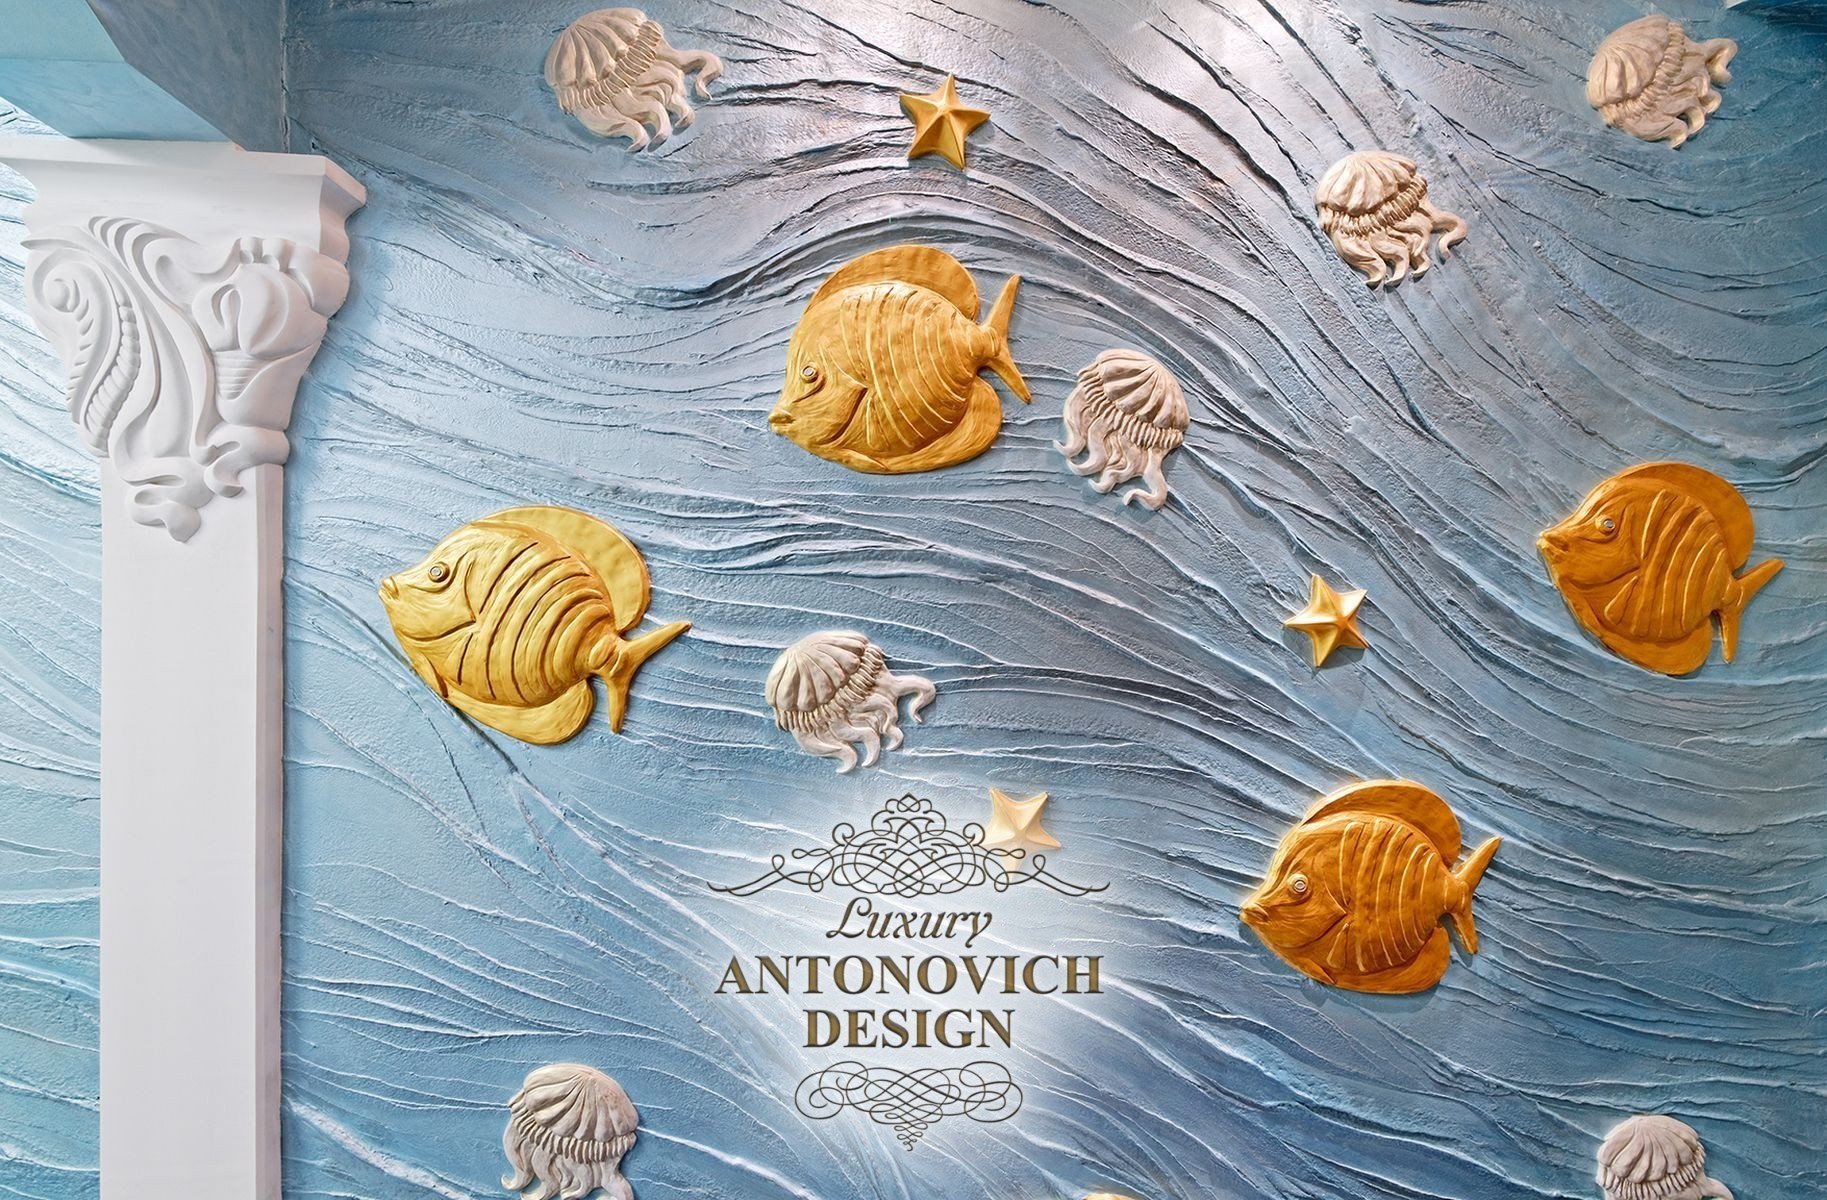 Antonovich-Design61